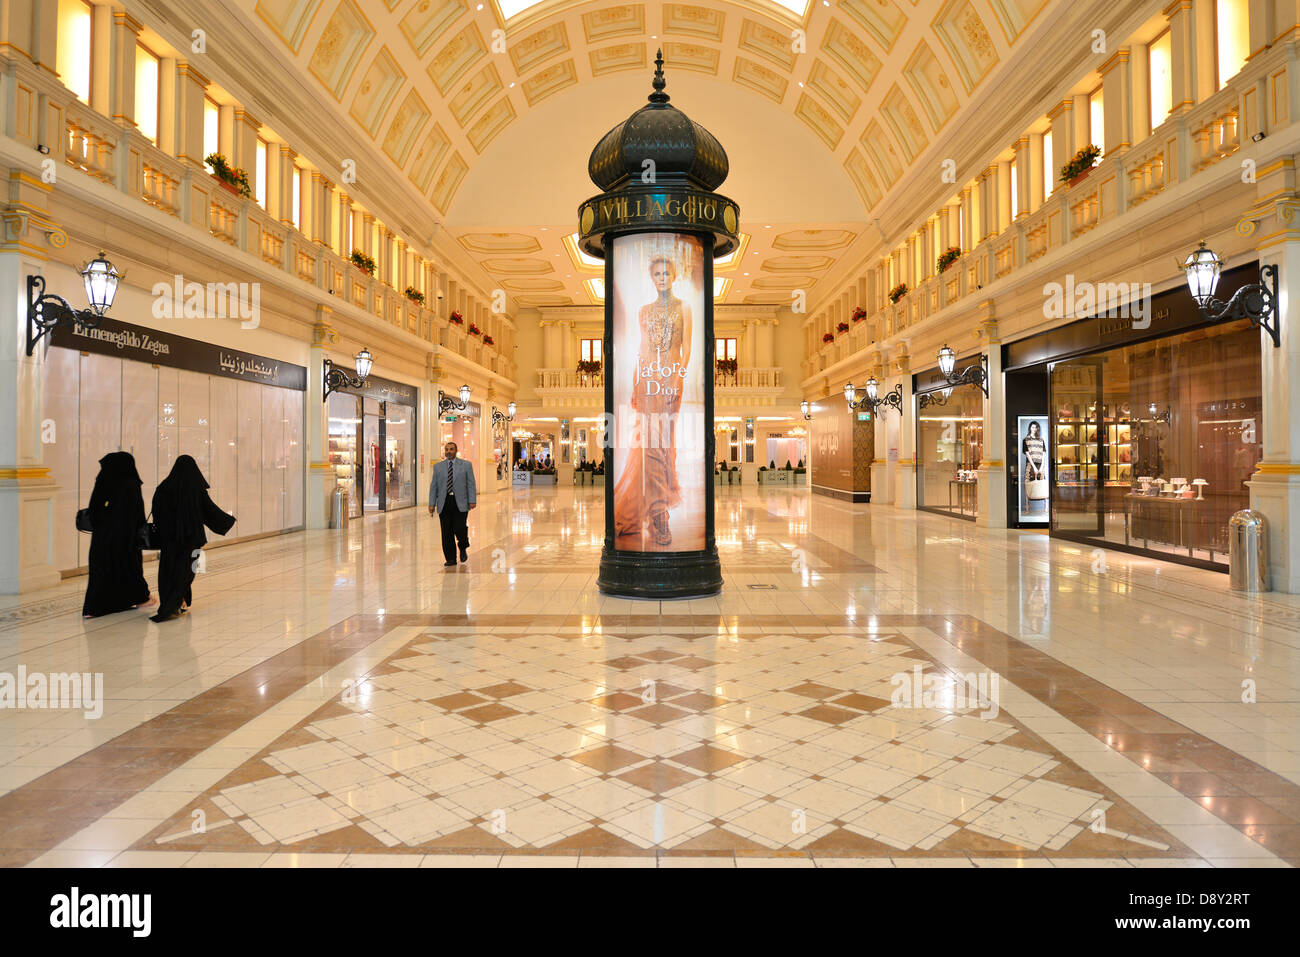 Place Vendôme Mall, Qatar Luxurious Shopping Mall